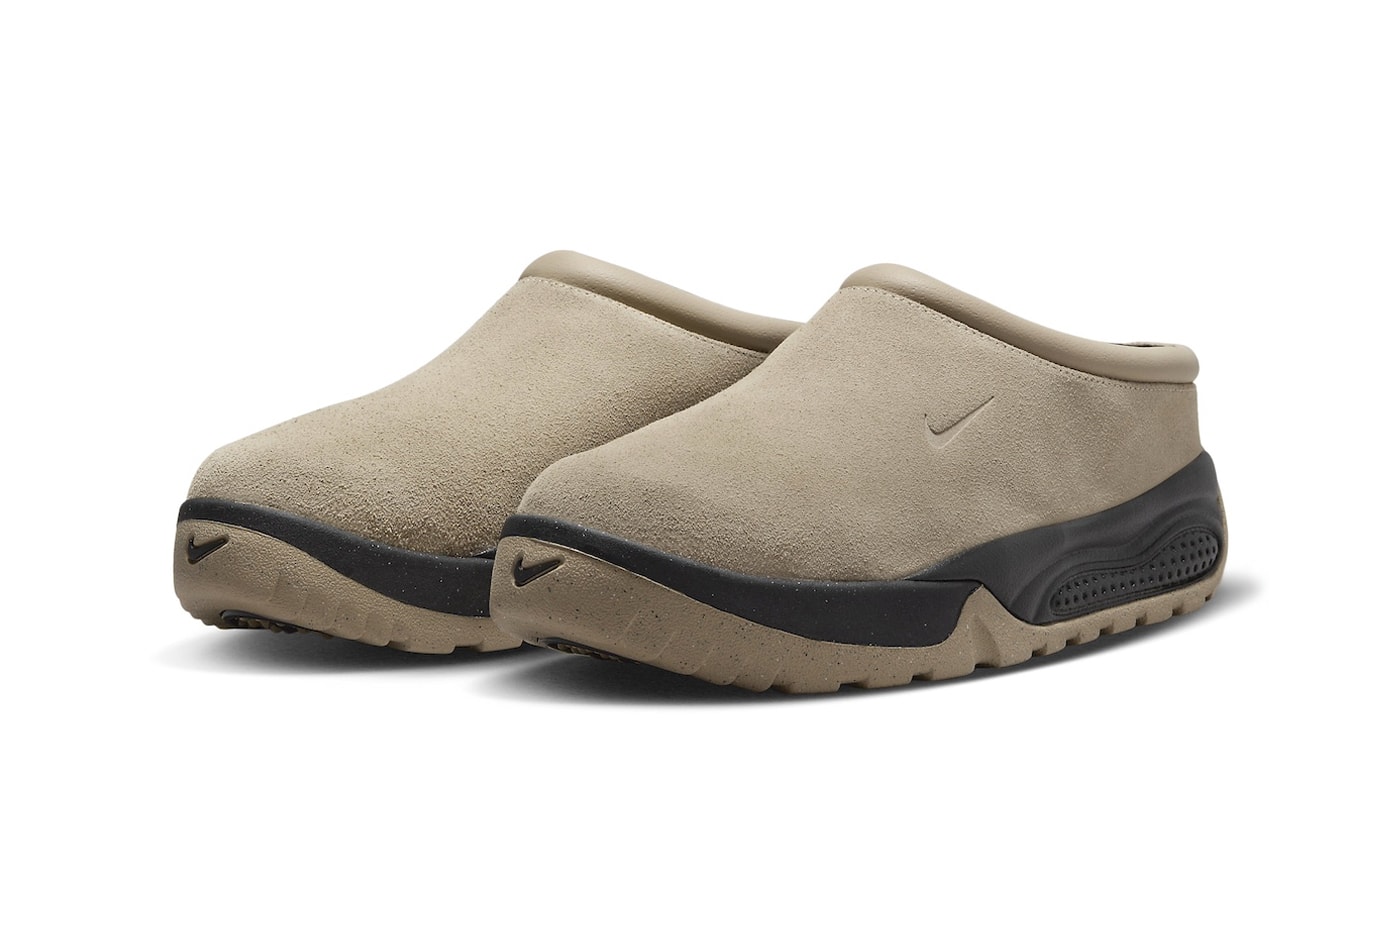 Nike ACG Rufus Limestone FV2923-200 Release Info